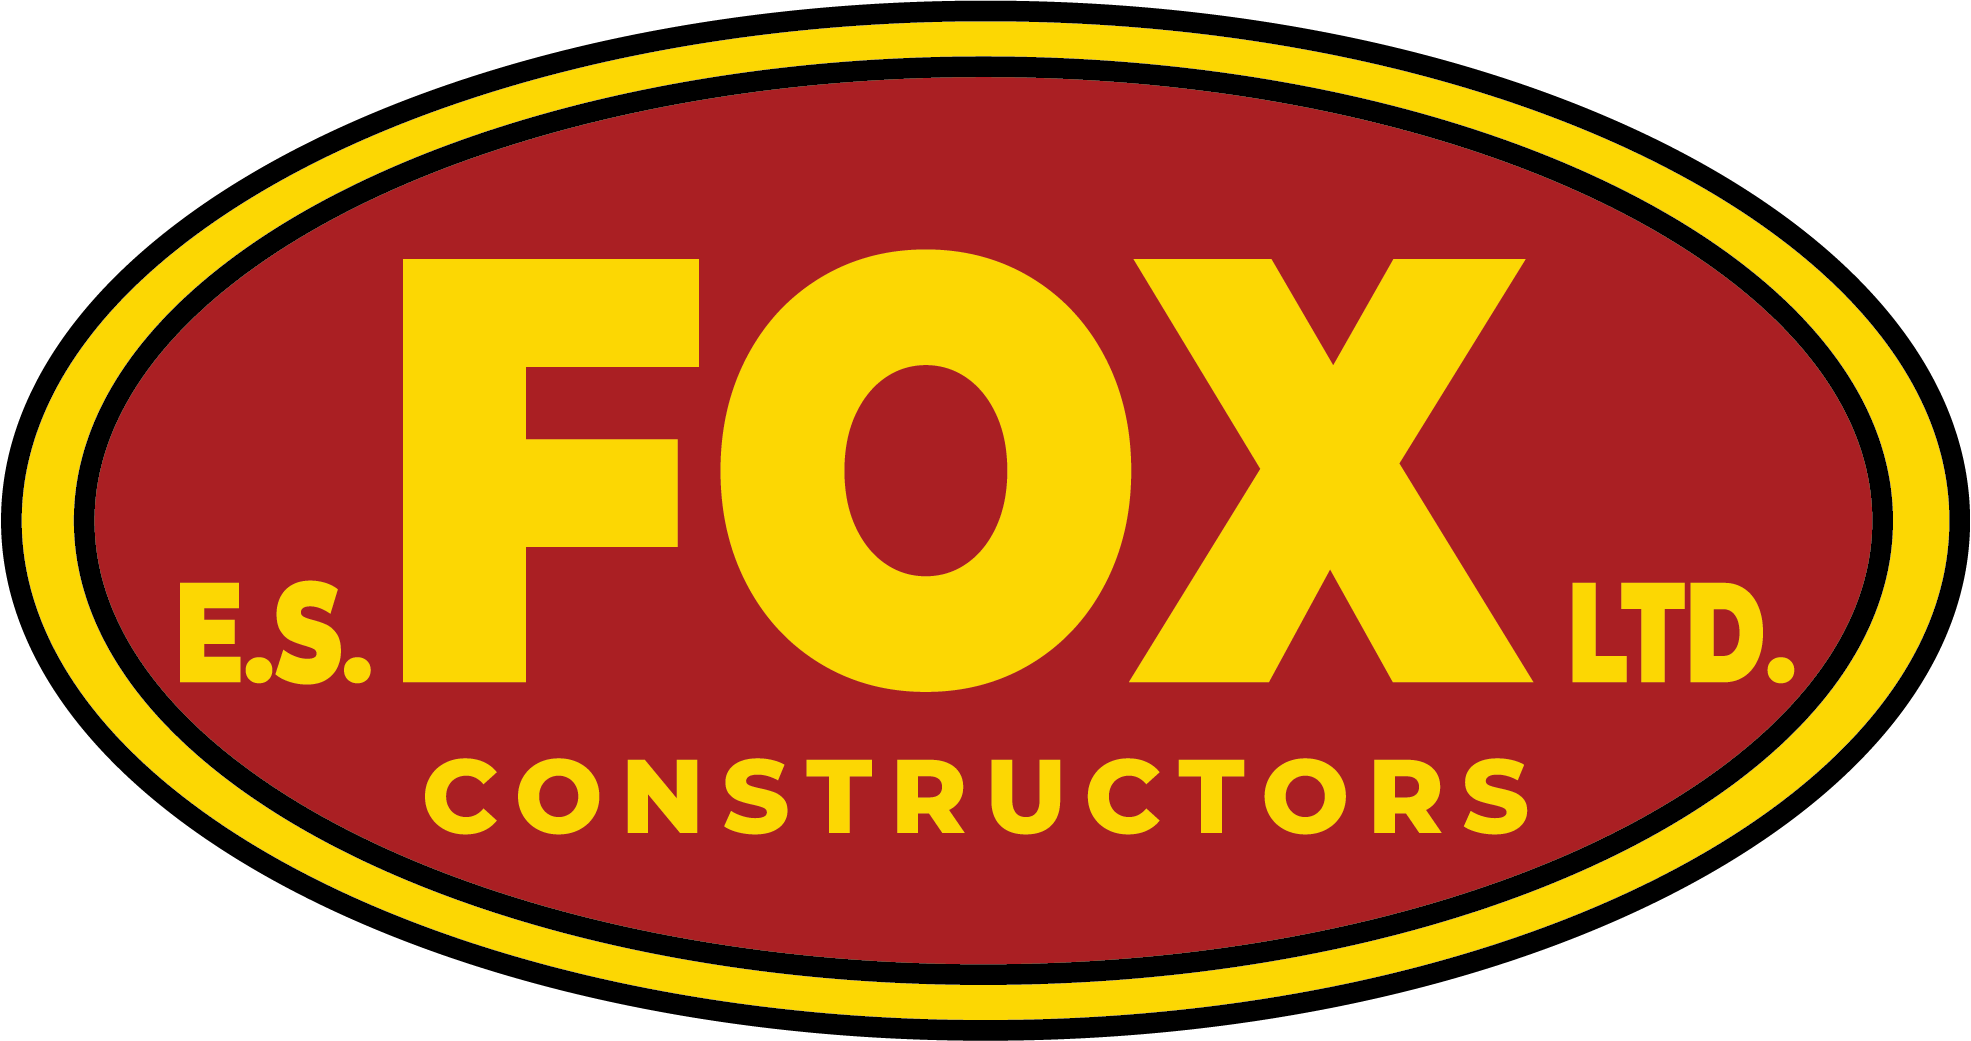 ES Fox Limited